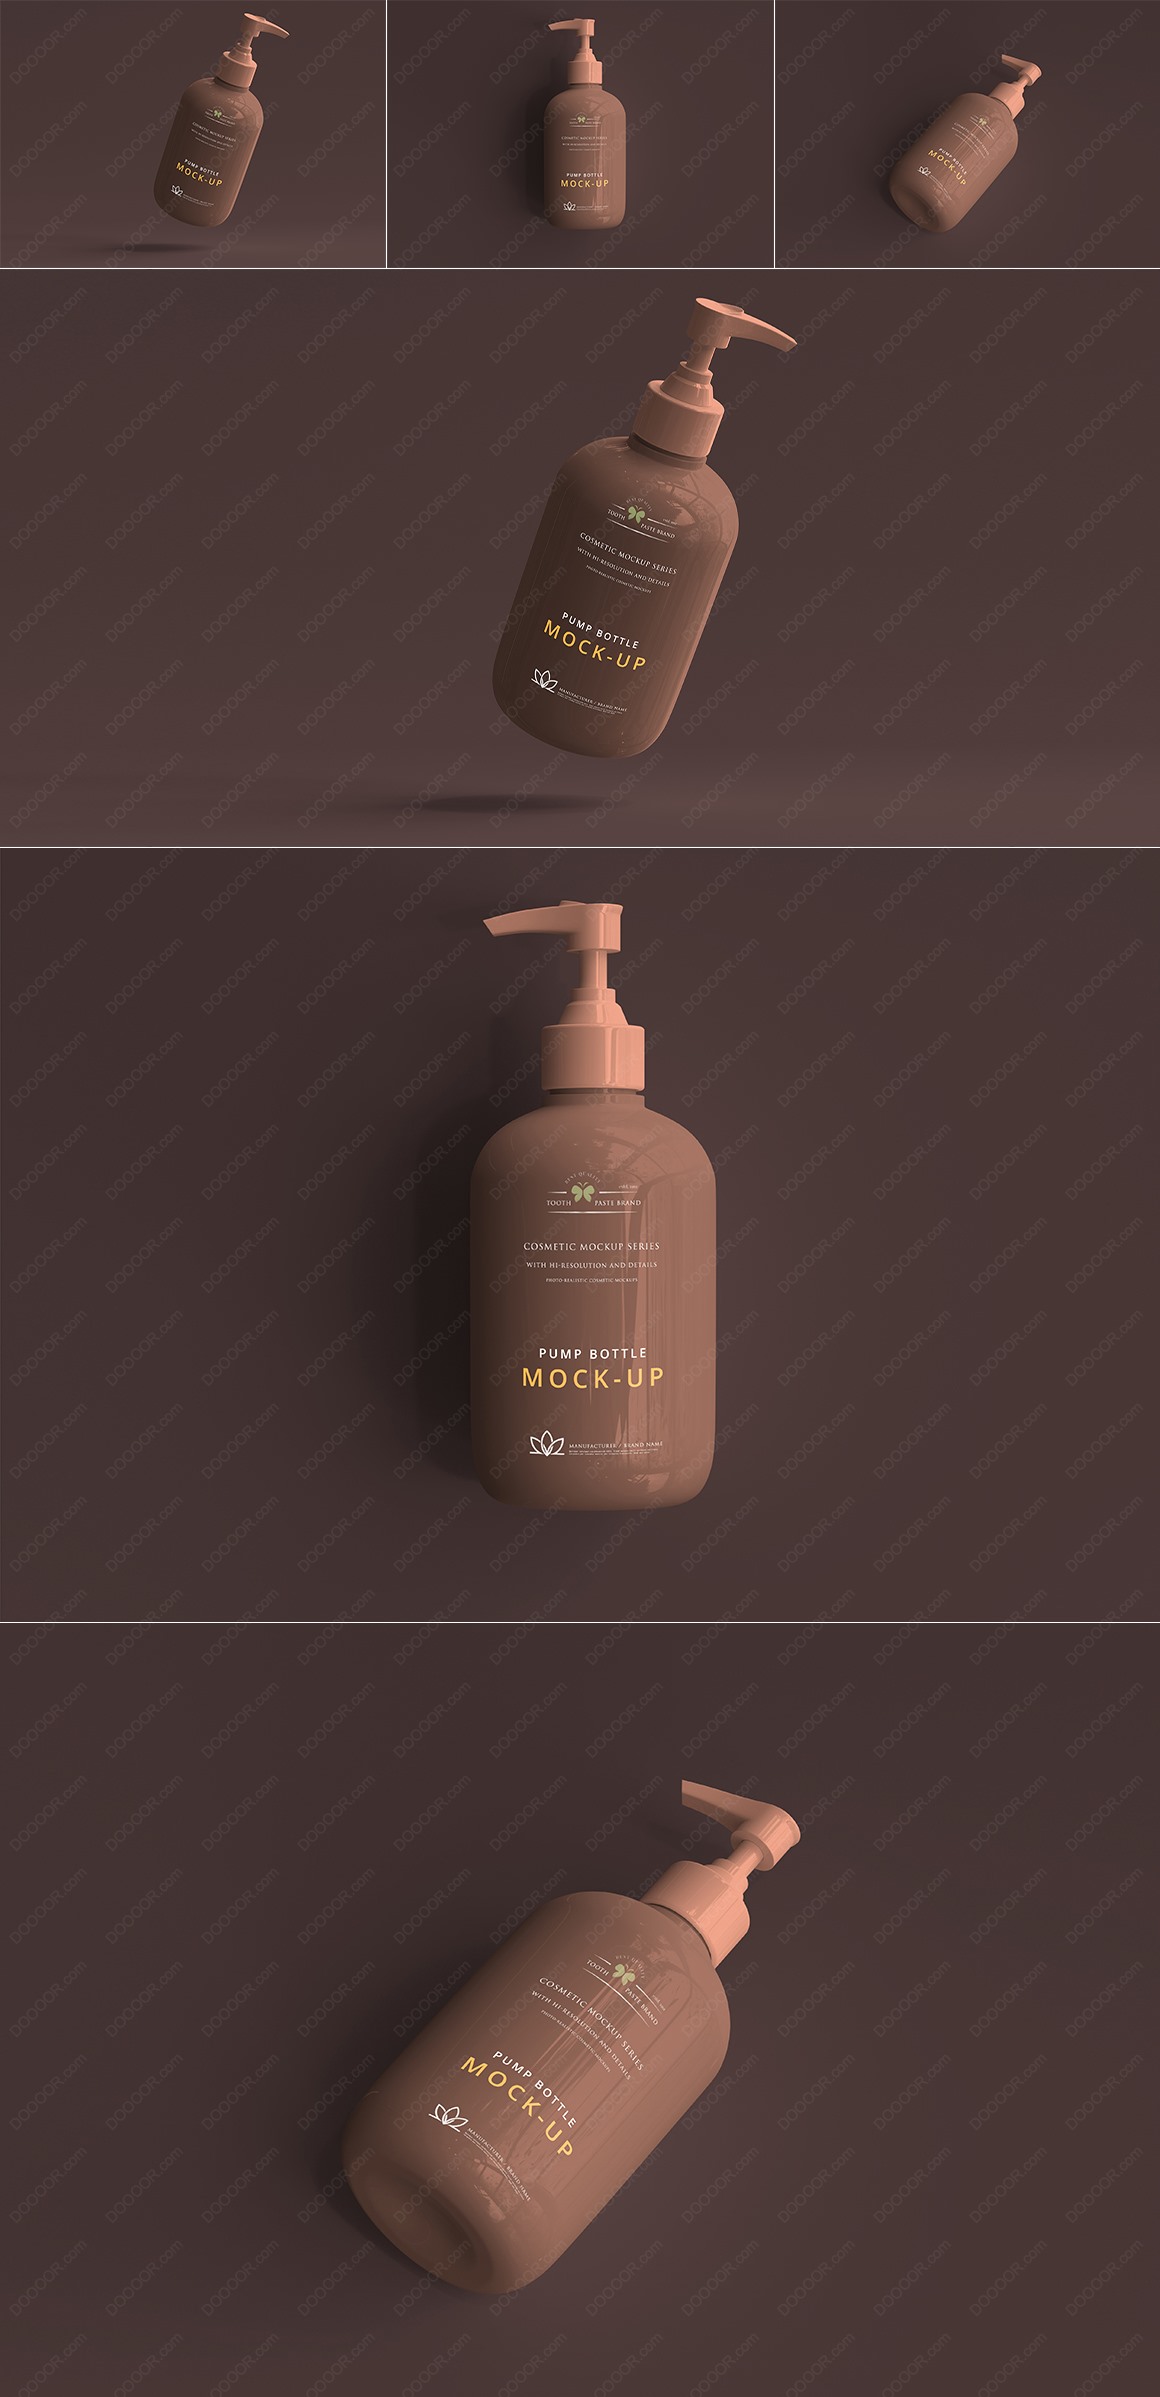 褐色洗发水包装瓶样机设计模板宣传3角展示PSD素材.jpg